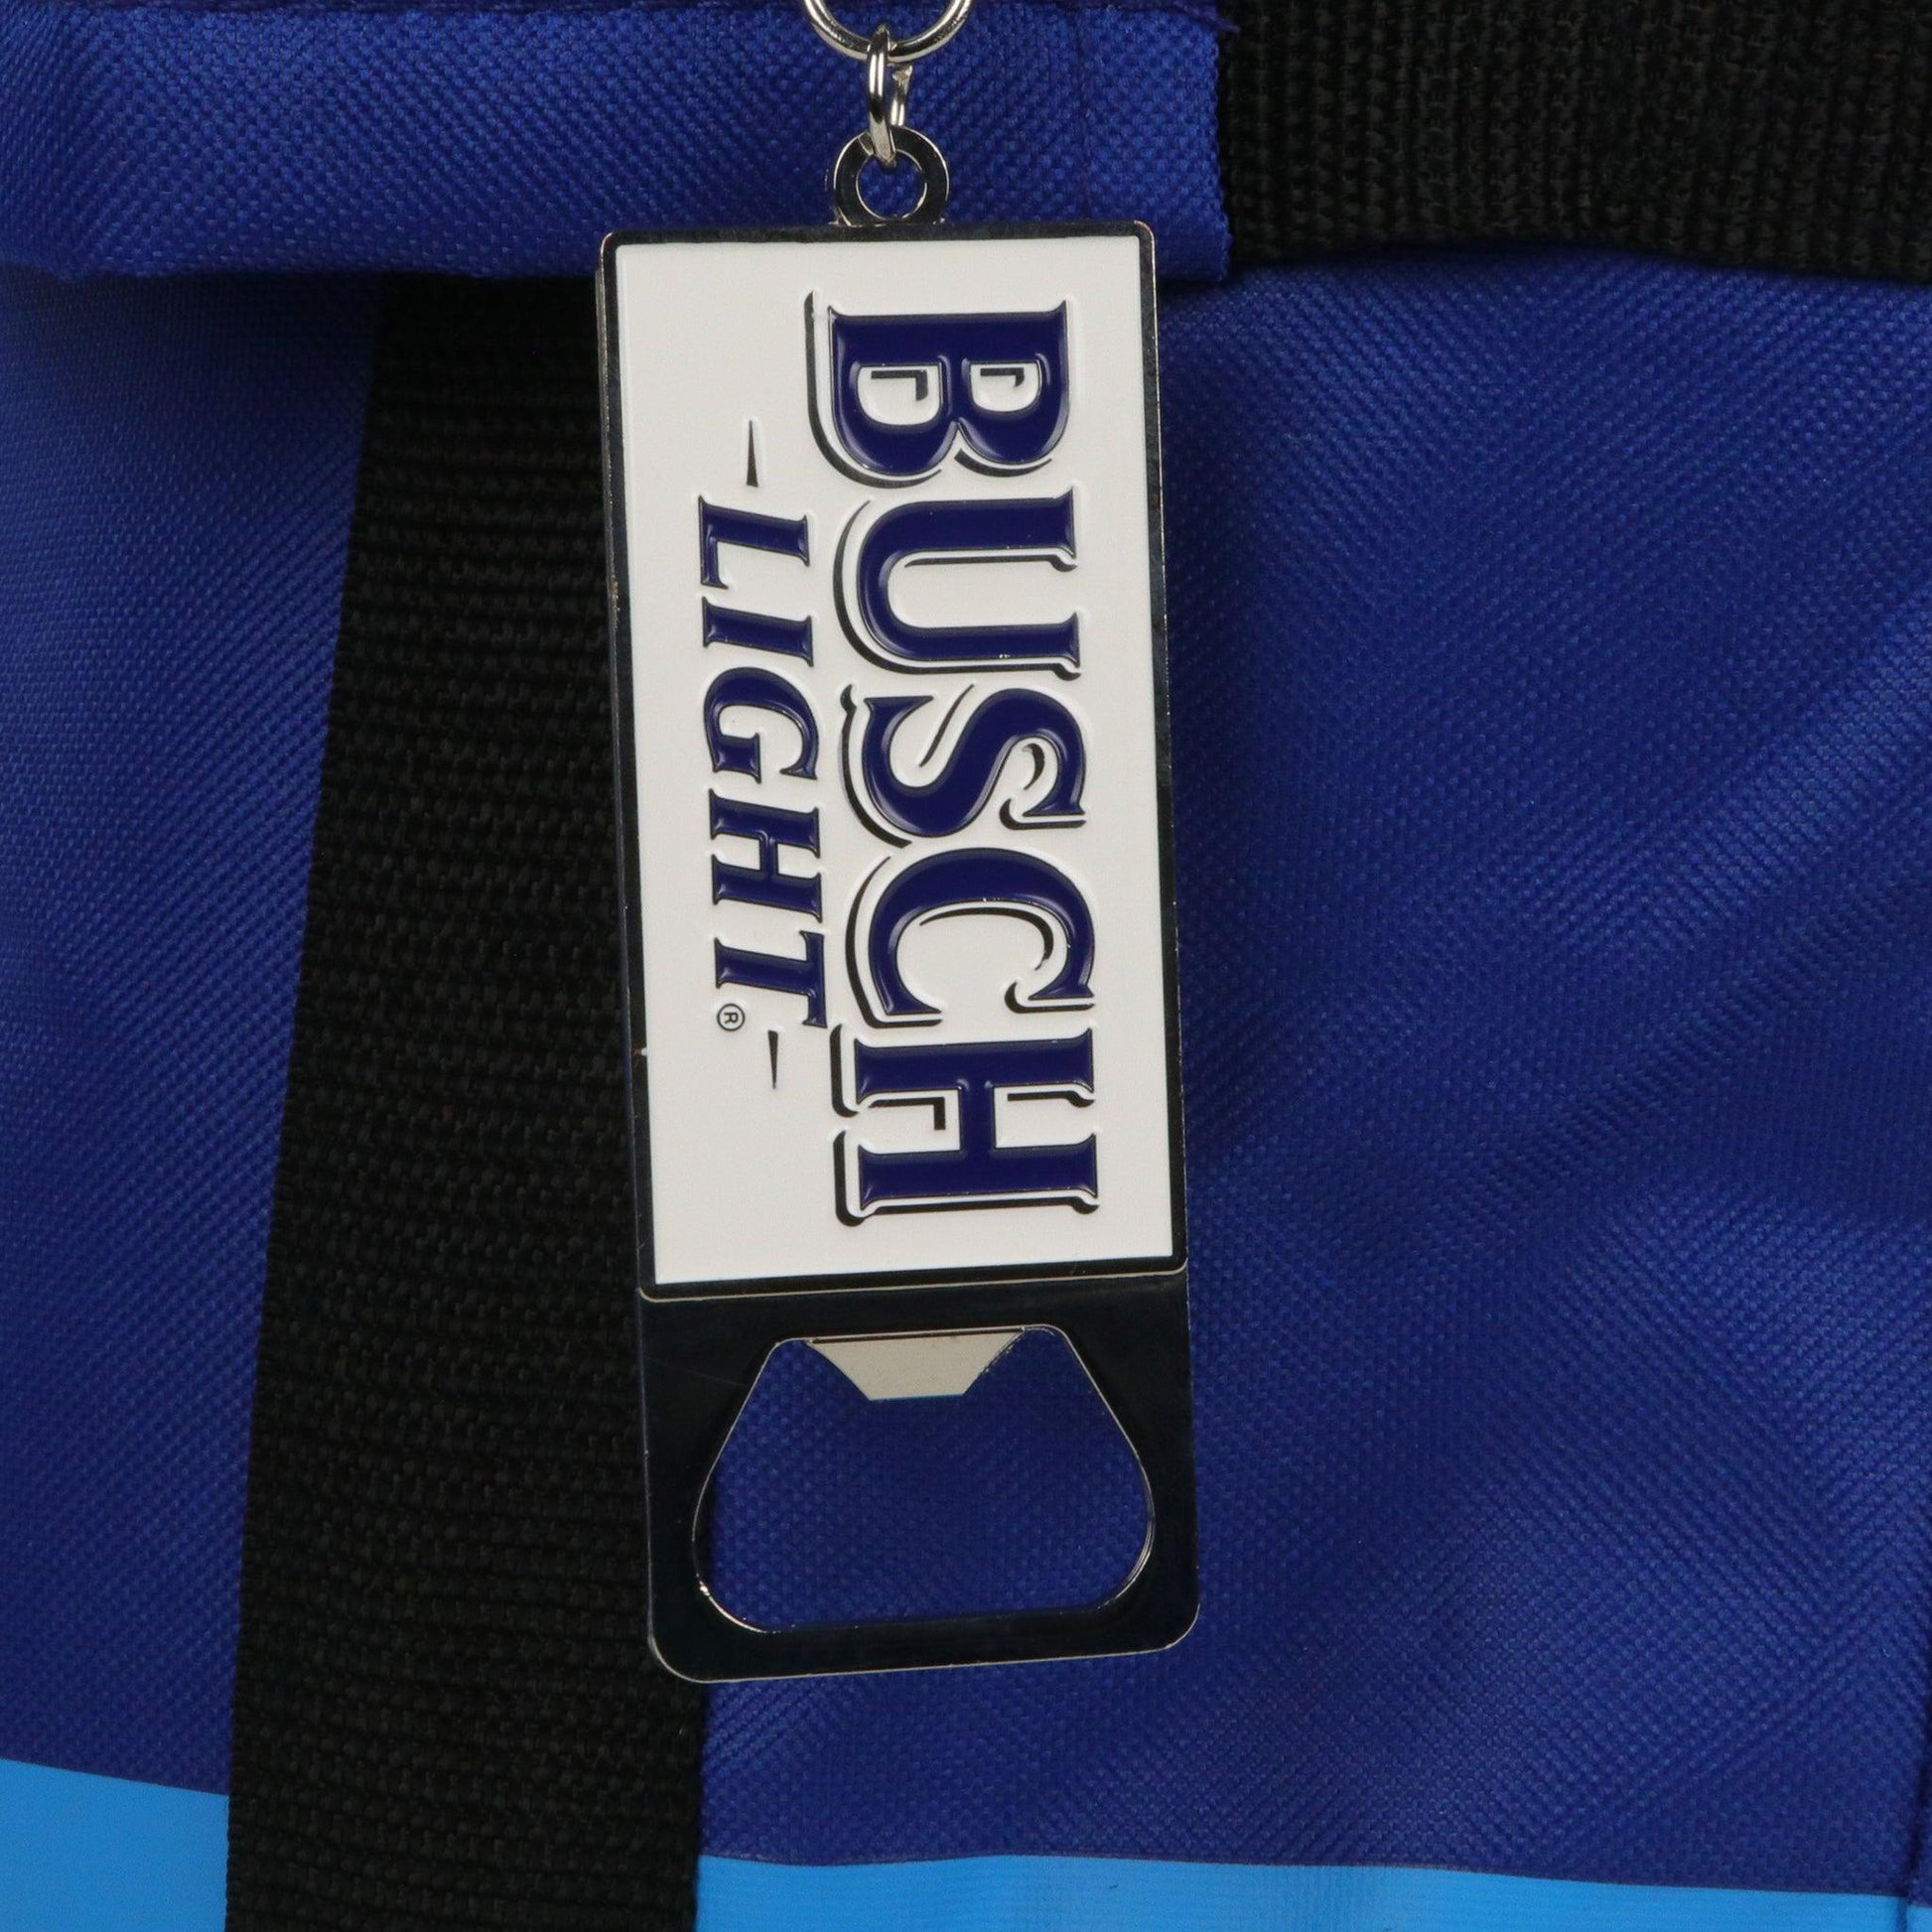 Close up of Busch light metal keychain bottle opener with busch Light logo